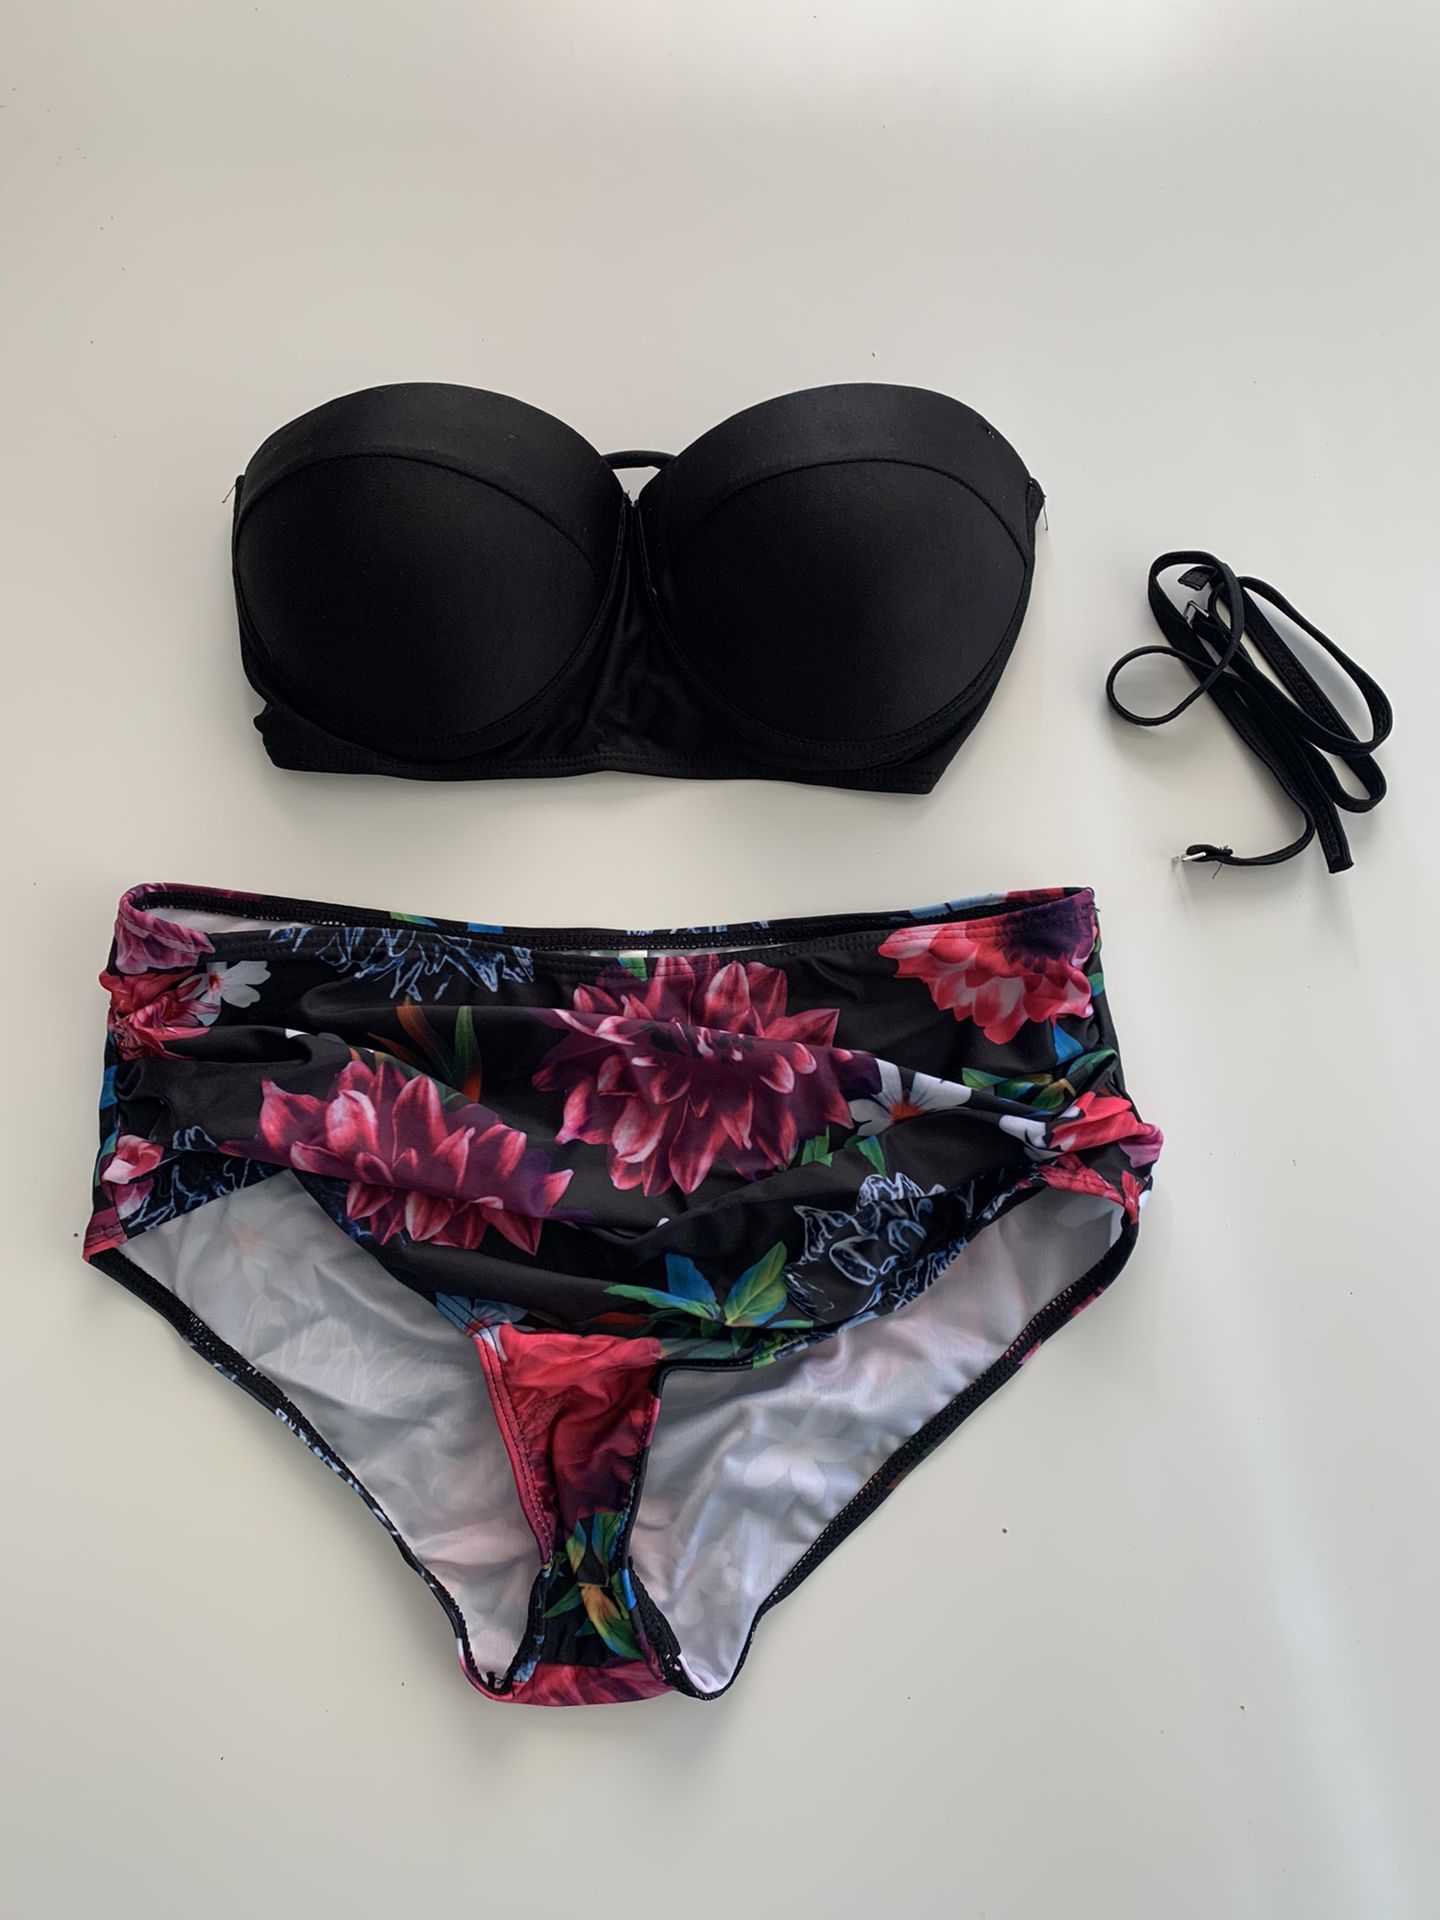 NEW Women’s bathing suits size l, xl, & 2xl